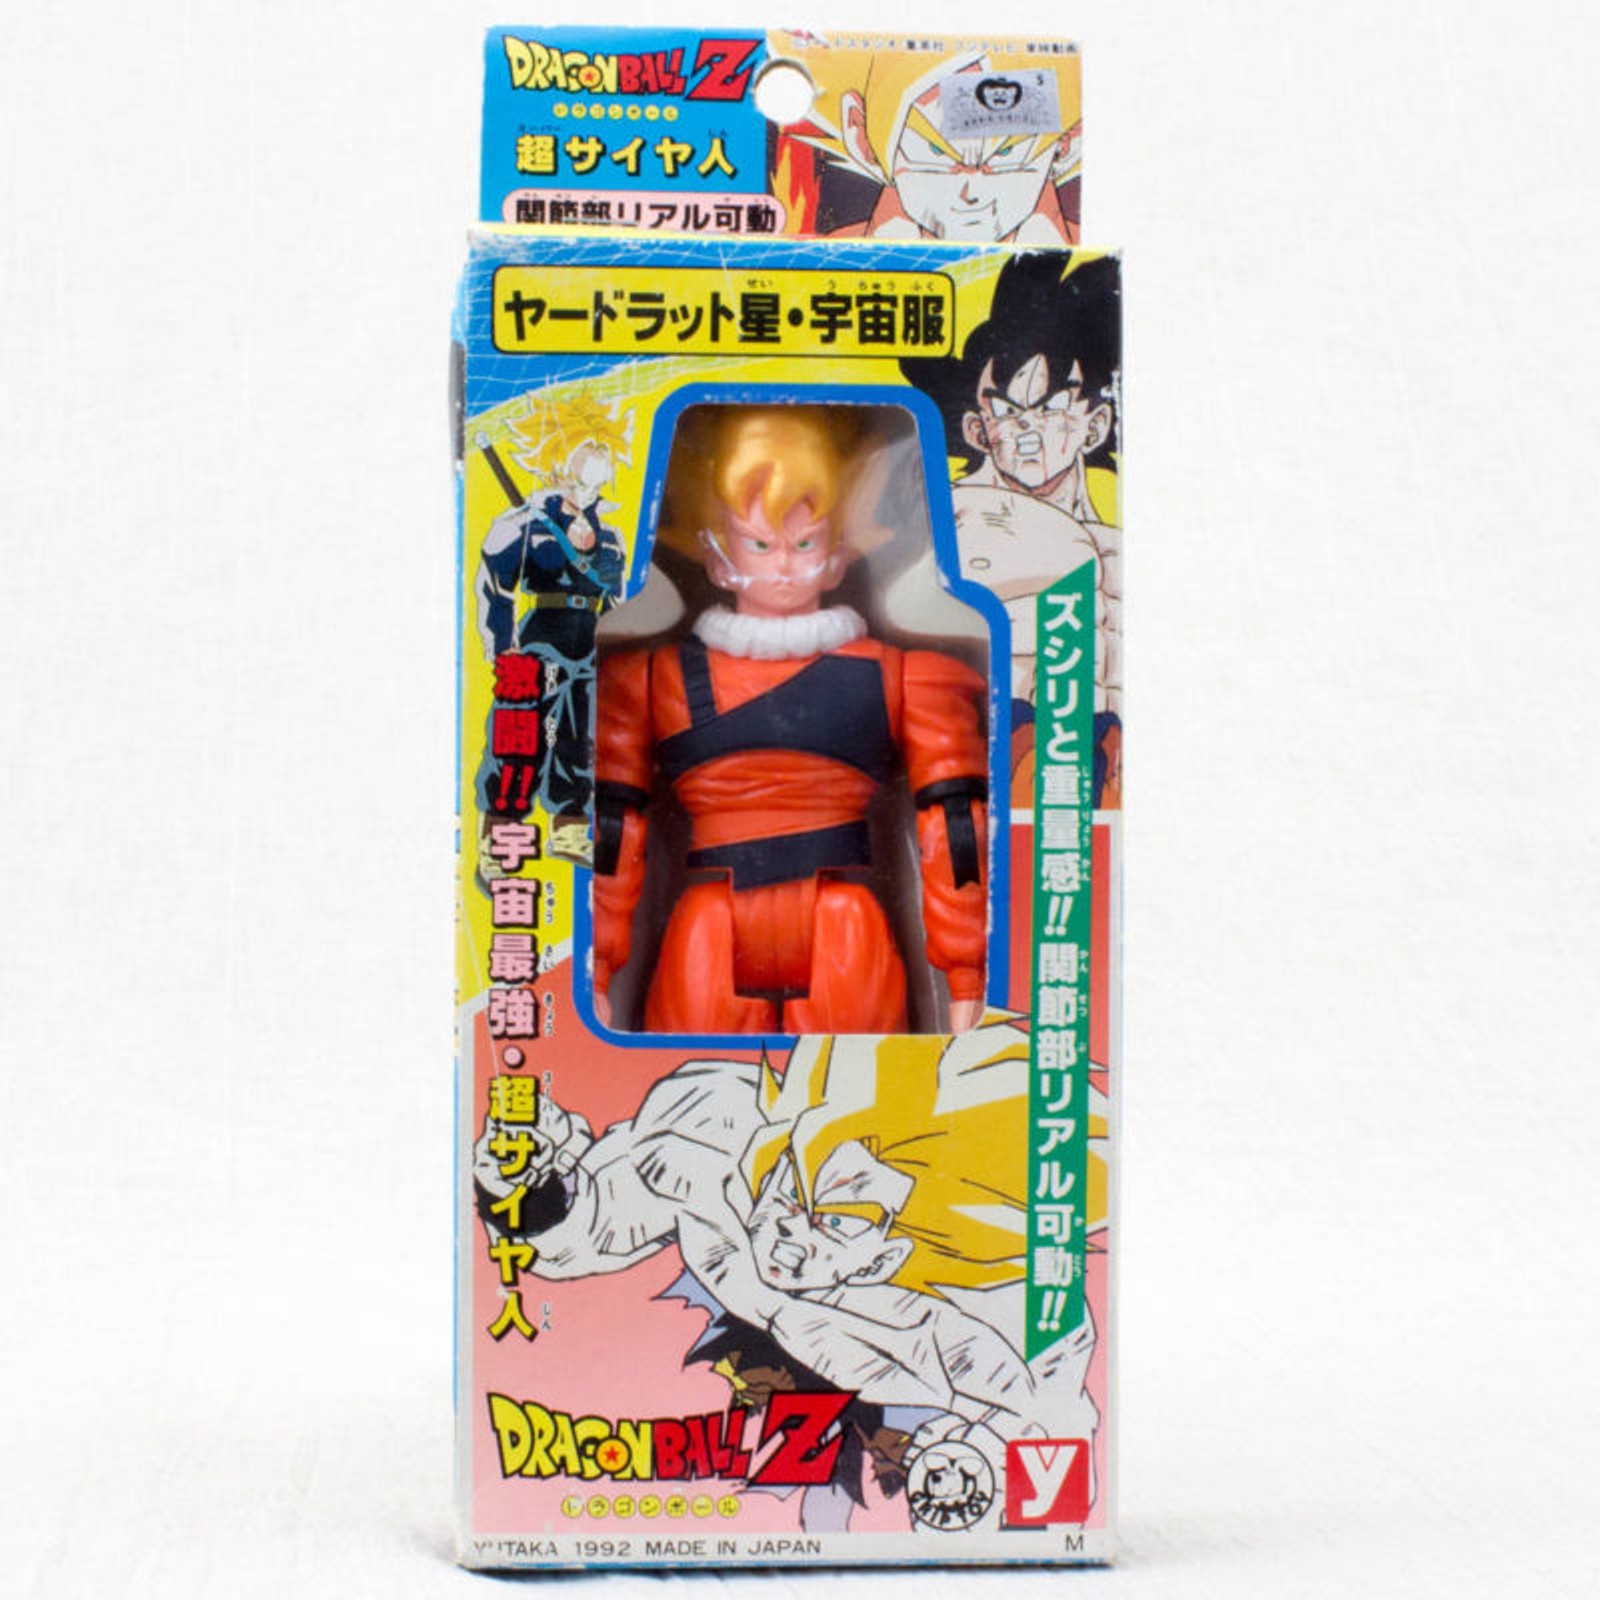 Dragon Ball Z Super Saiyan Son Gokou Yardrat Figure Yutaka JAPAN ANIME ...